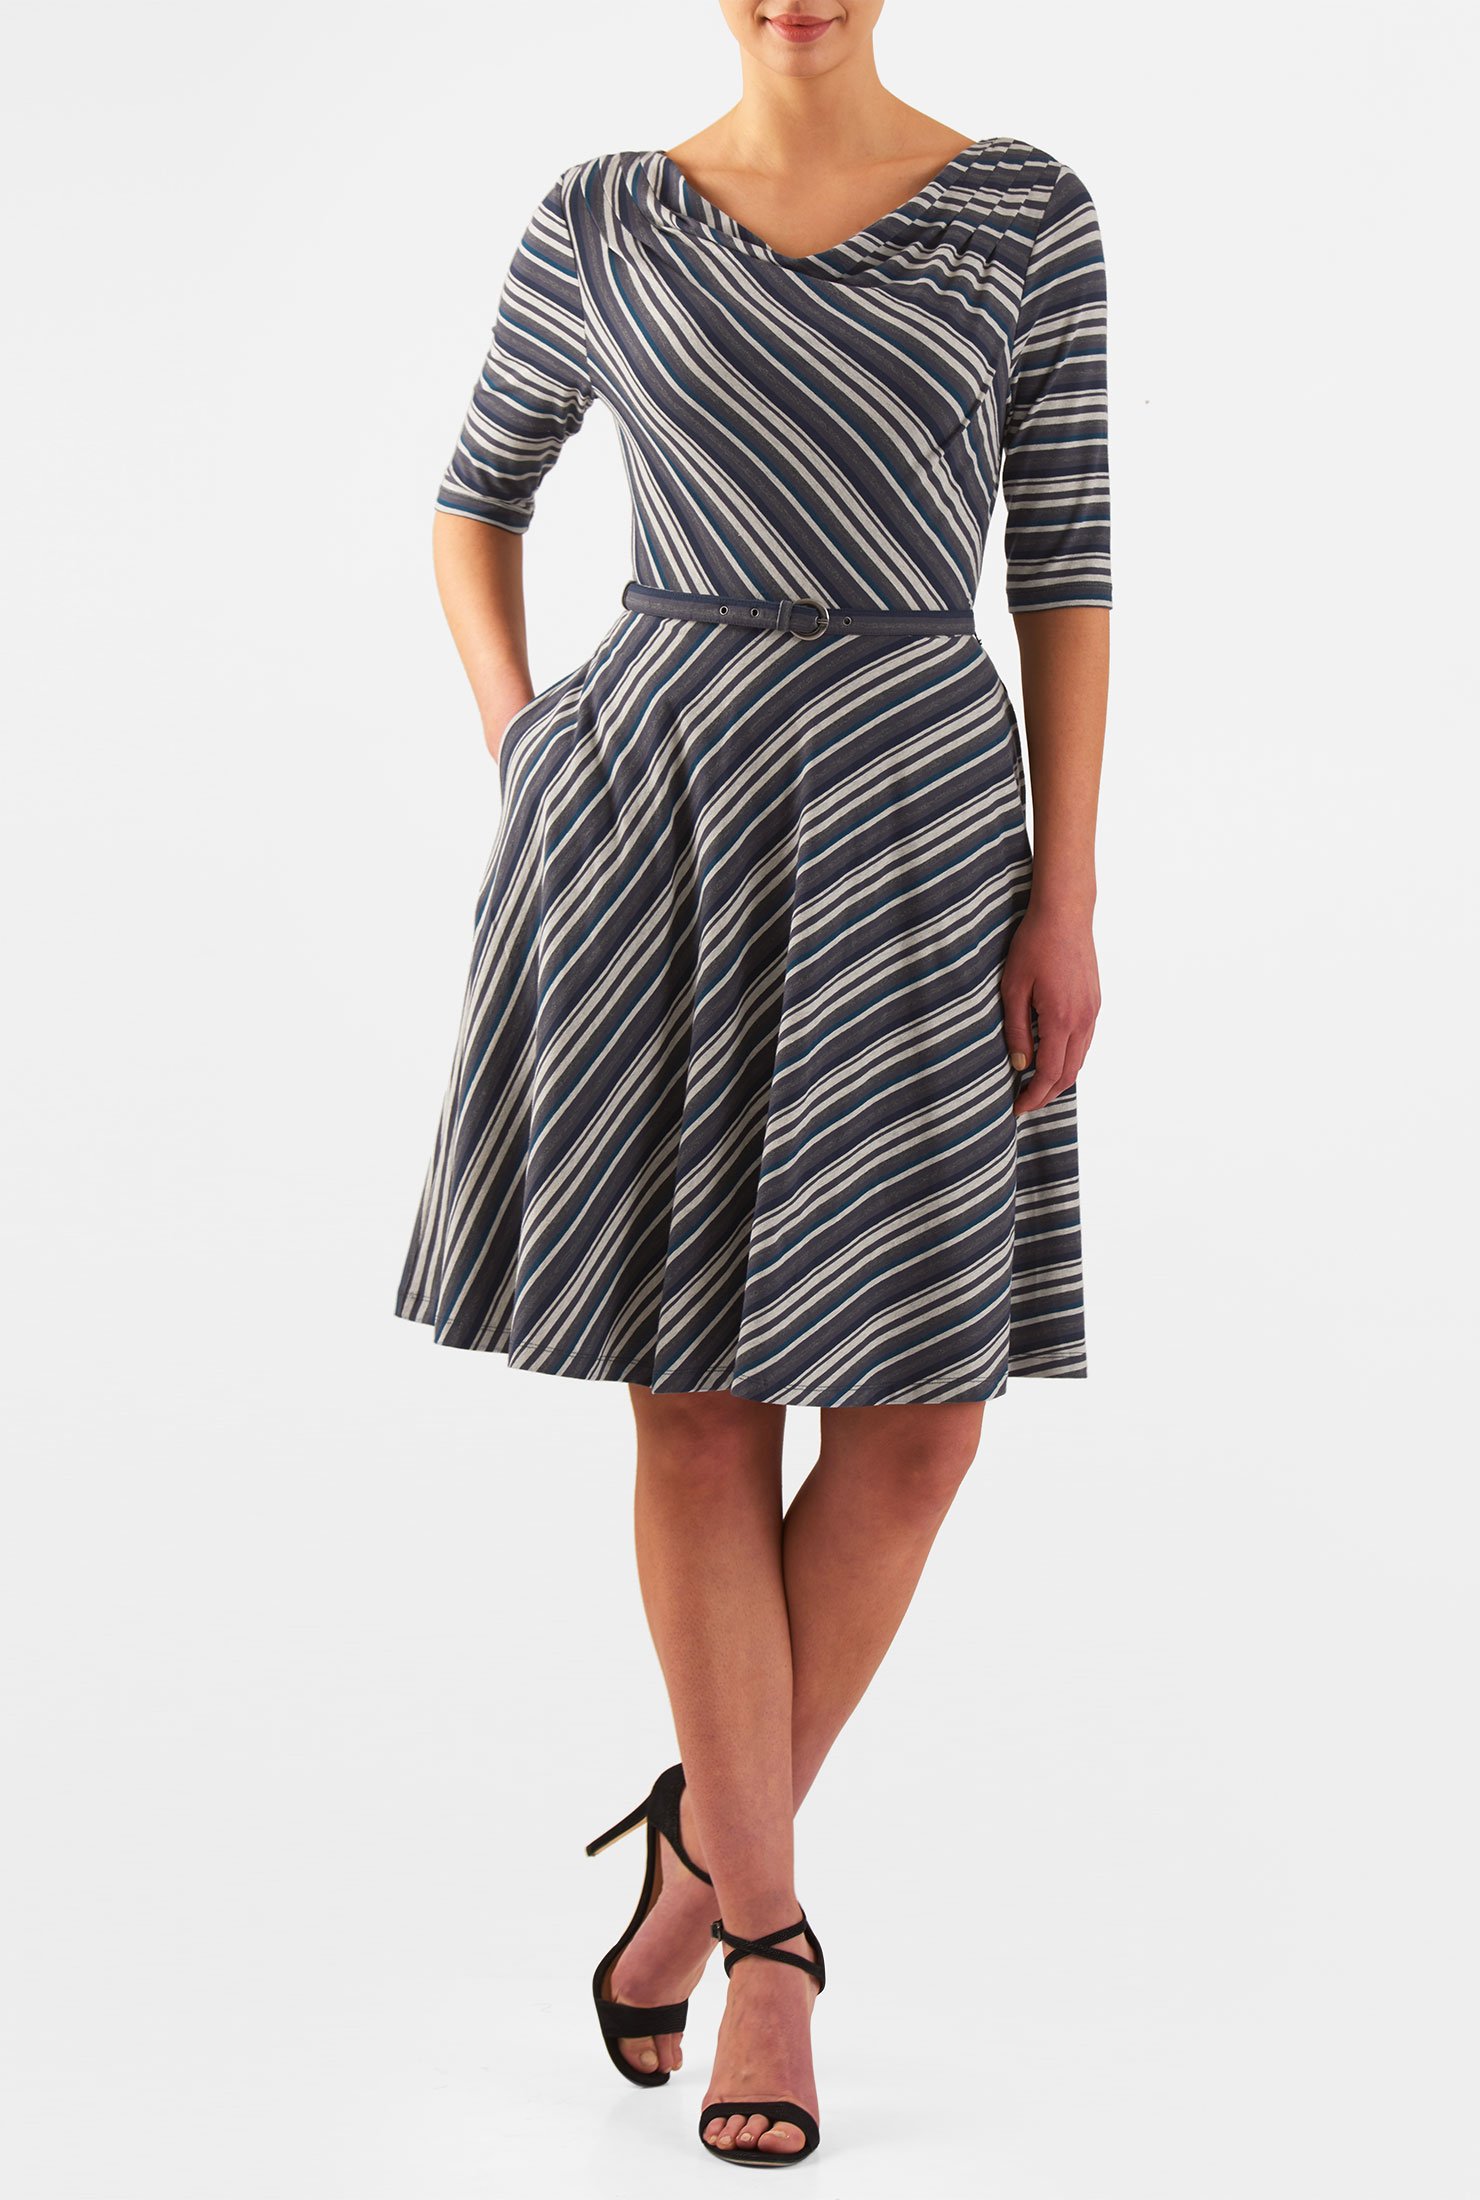 Shop Cowl neck stripe jersey knit dress | eShakti